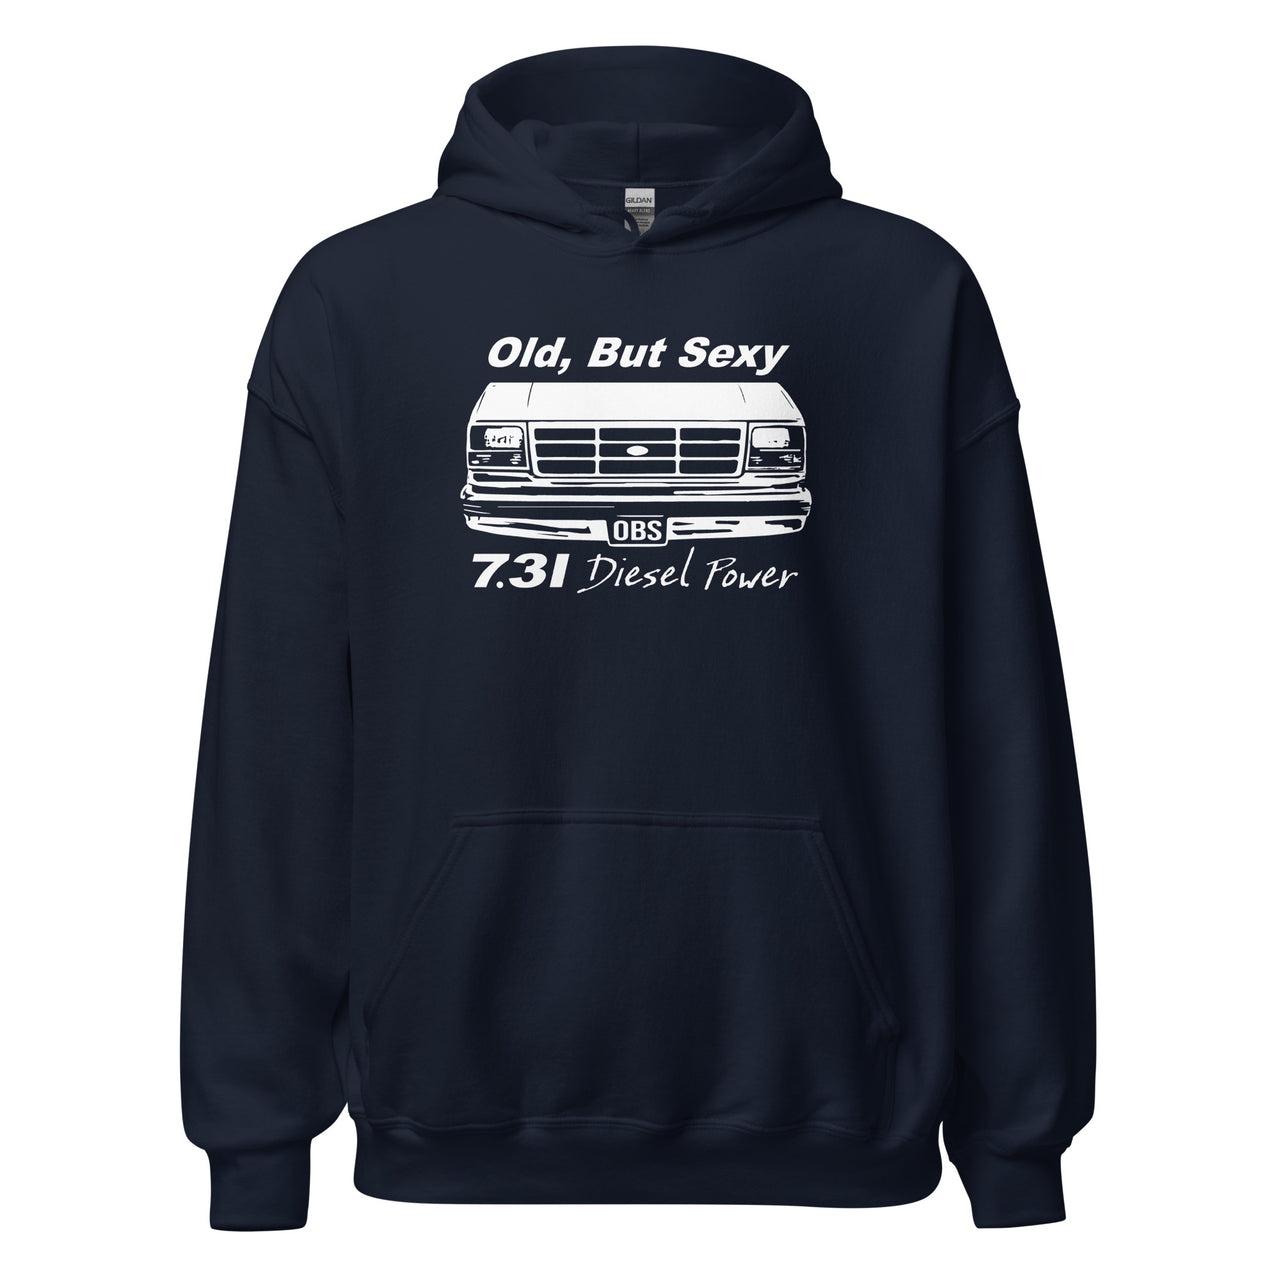 OBS Truck Hoodie Old, But Sexy 7.3 Powerstroke Diesel Sweatshirt modeled in navy